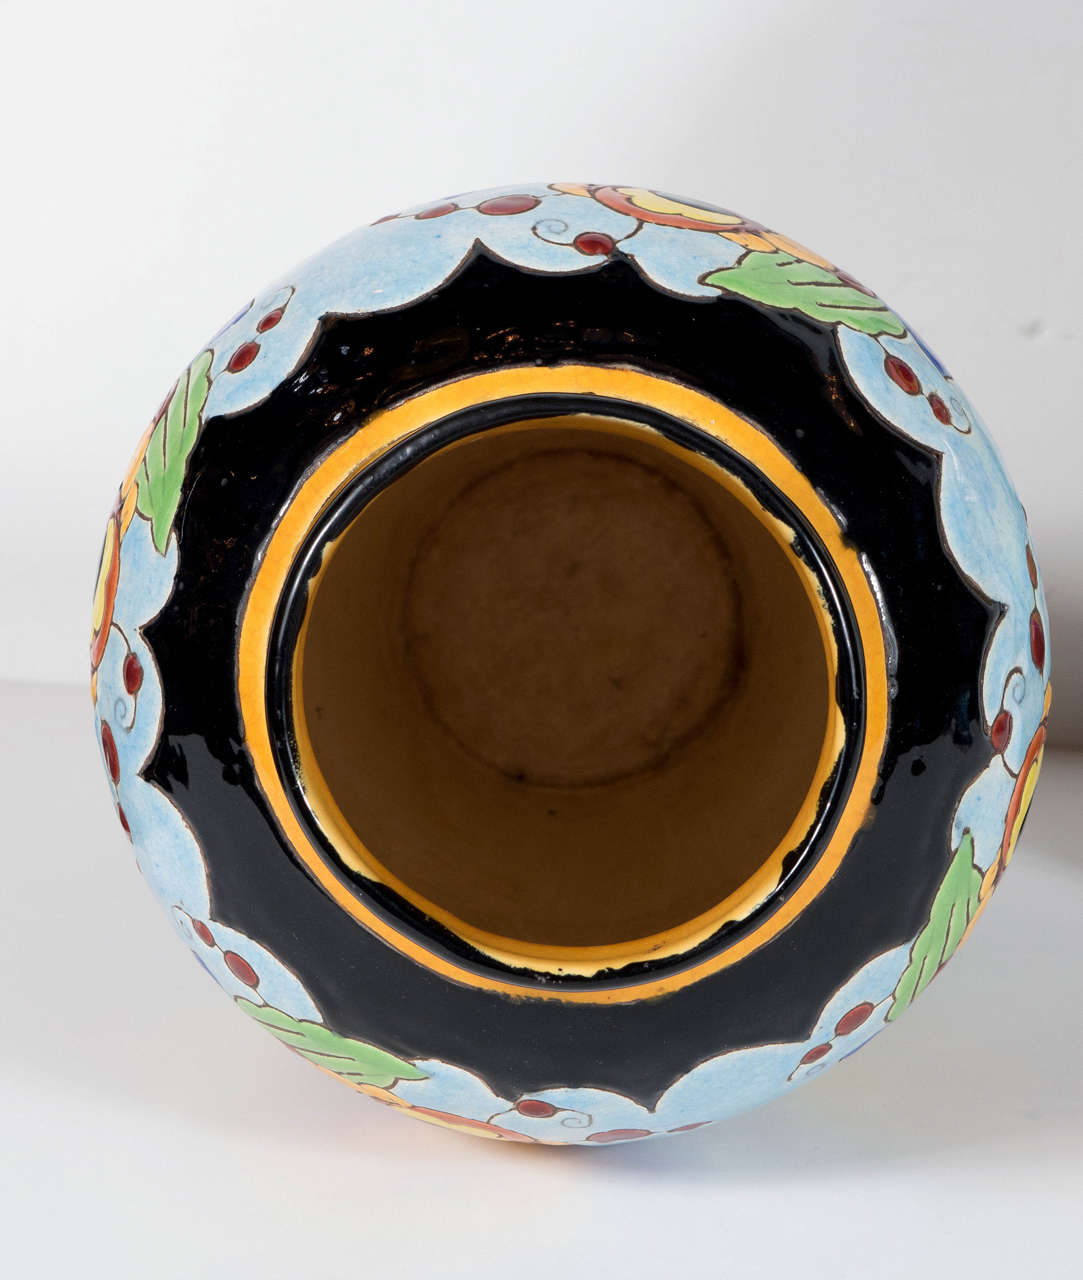 Exquisite Pair of Art Deco Hand-Painted Ceramic Vases by Keramis 1